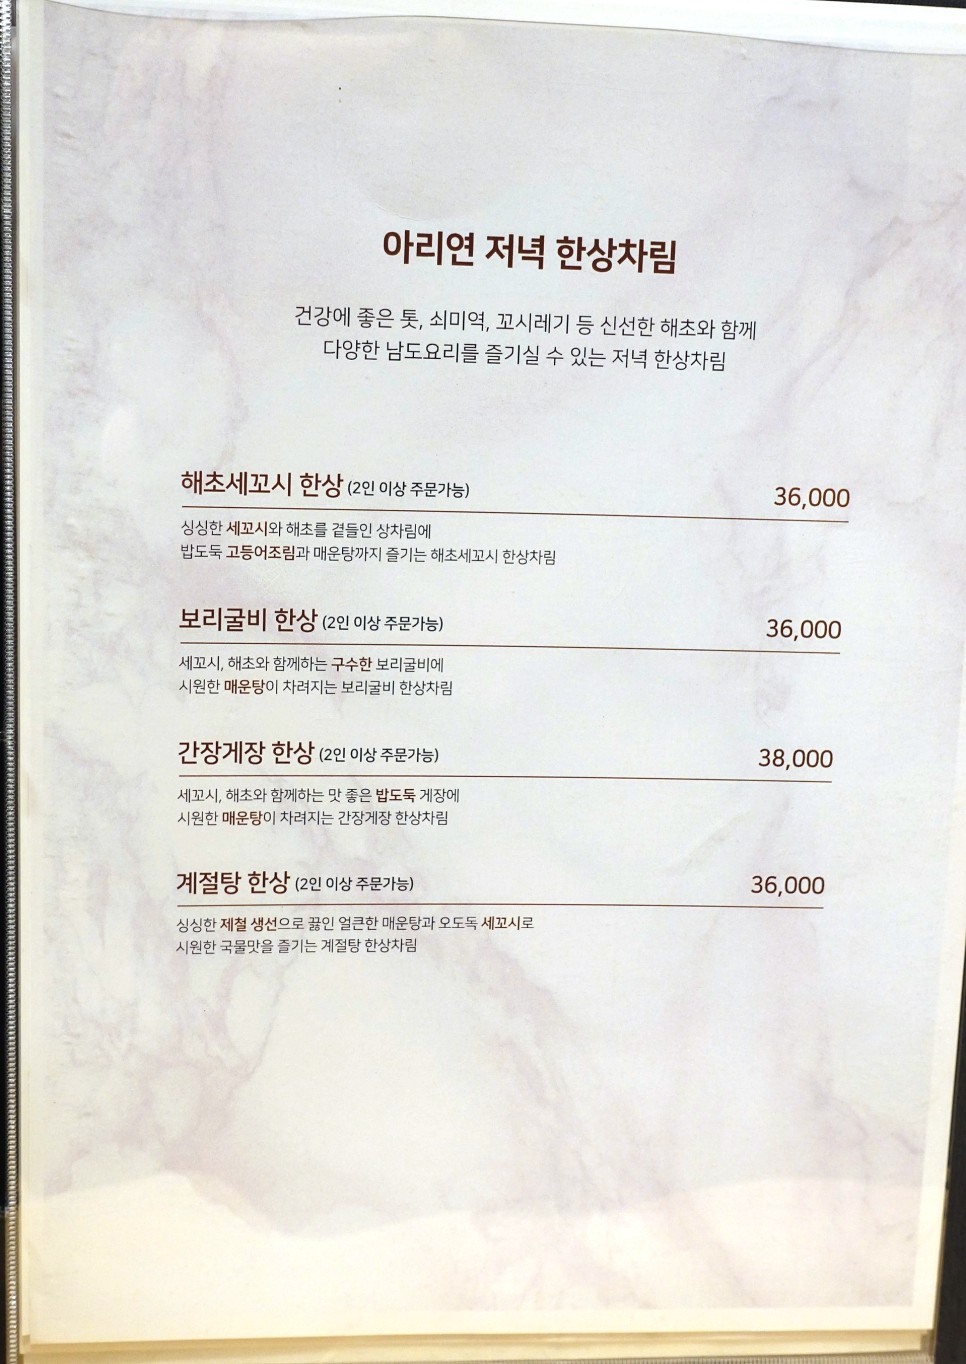 중구맛집 개별룸이 편안한 서울 아리연 한정식 코스요리 후기